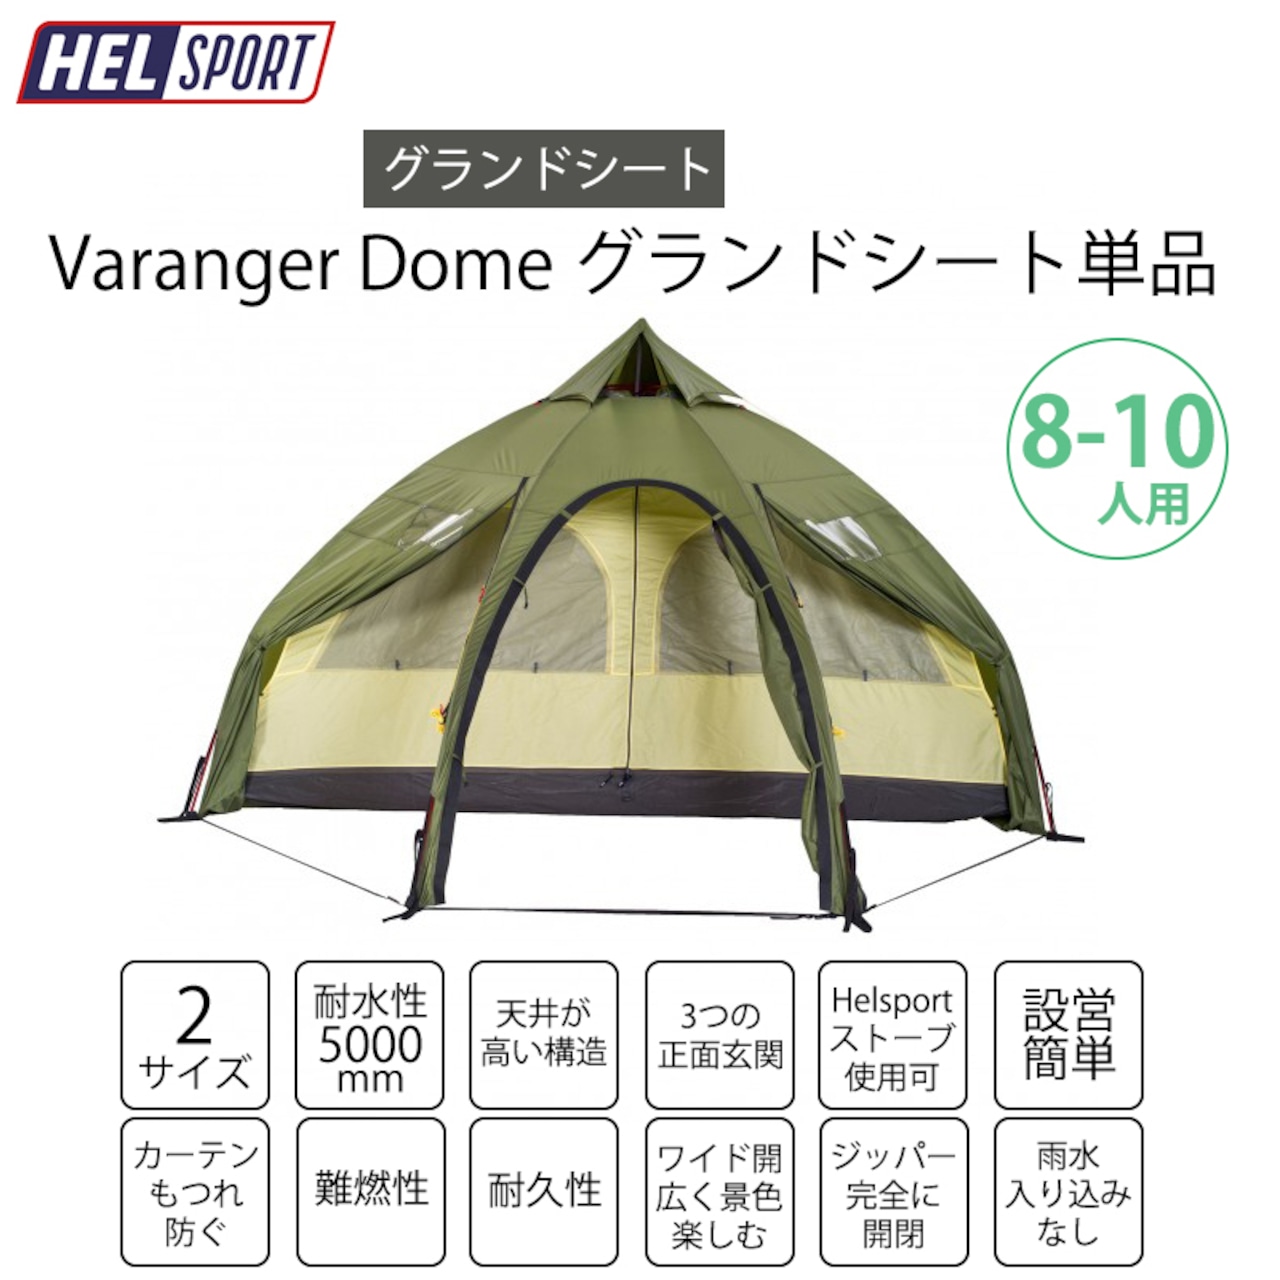 HELSPORT（ヘルスポート）【グランドシート単品】Varanger Dome 8-10 ( バランゲルドーム 8-10人用 )